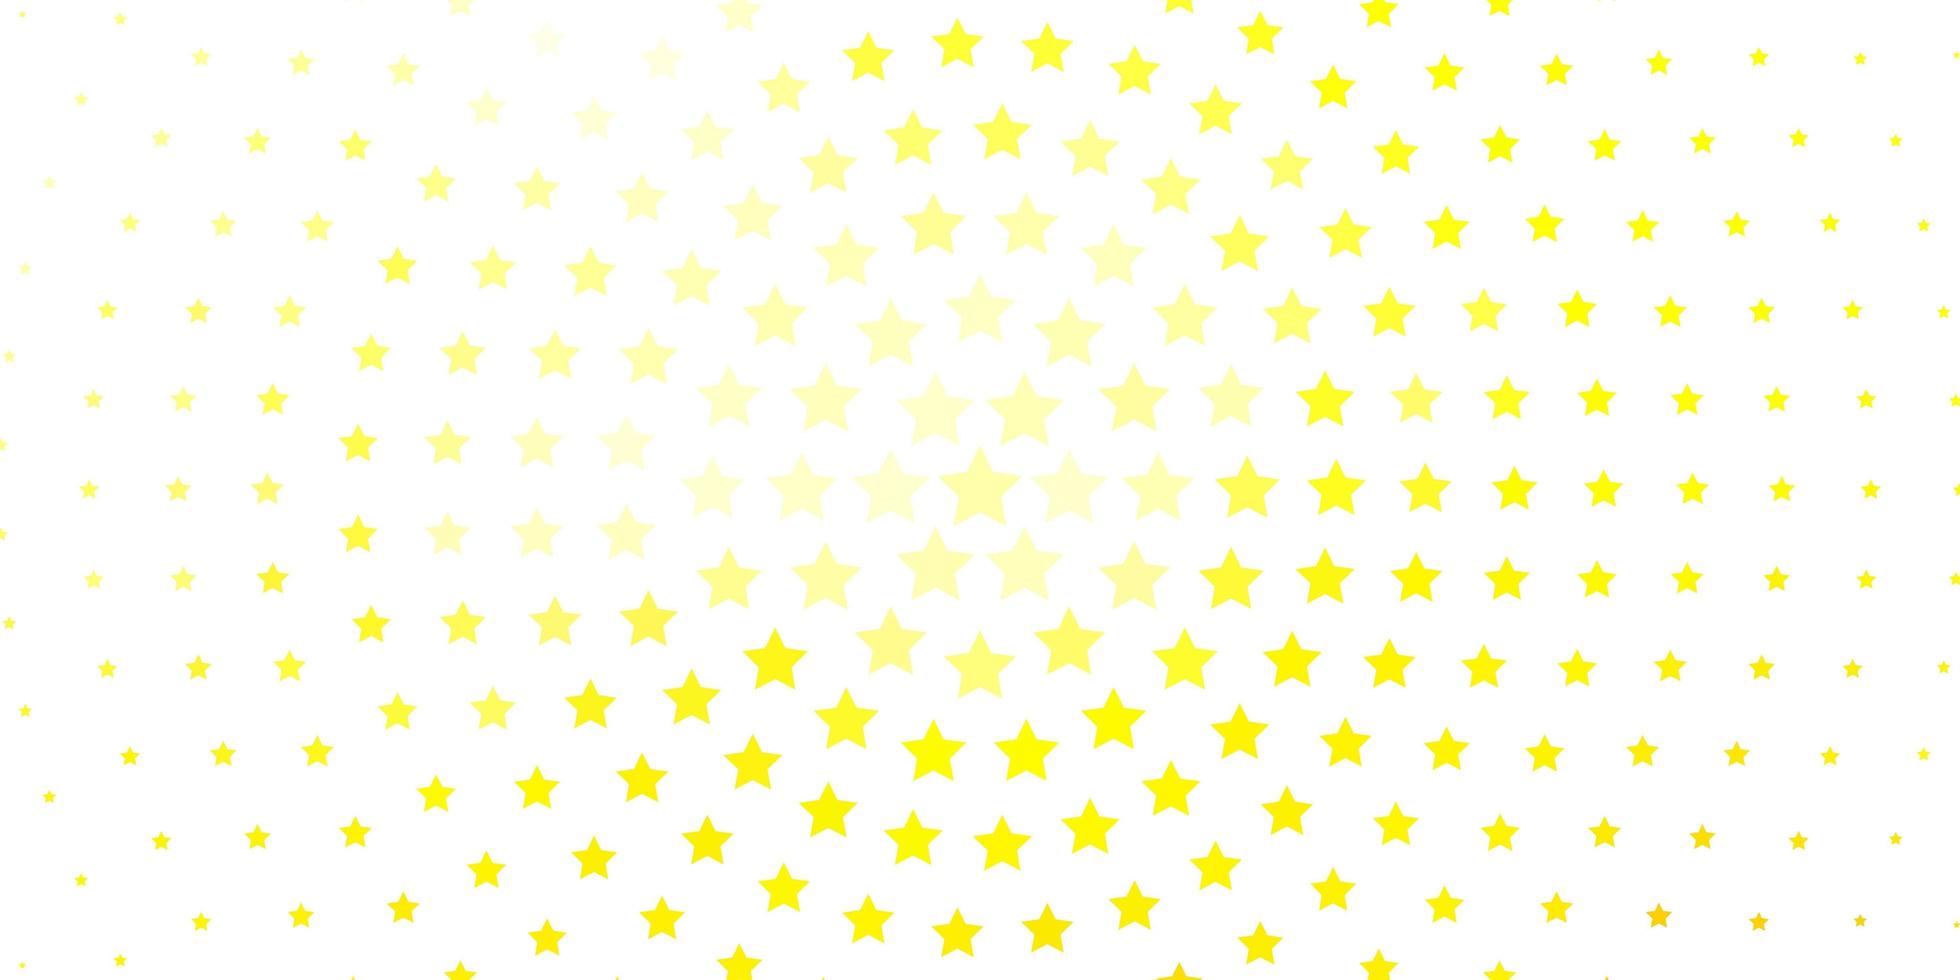 fond de vecteur jaune clair avec des étoiles colorées. illustration colorée dans un style abstrait avec des étoiles dégradées. modèle pour les sites Web, pages de destination.